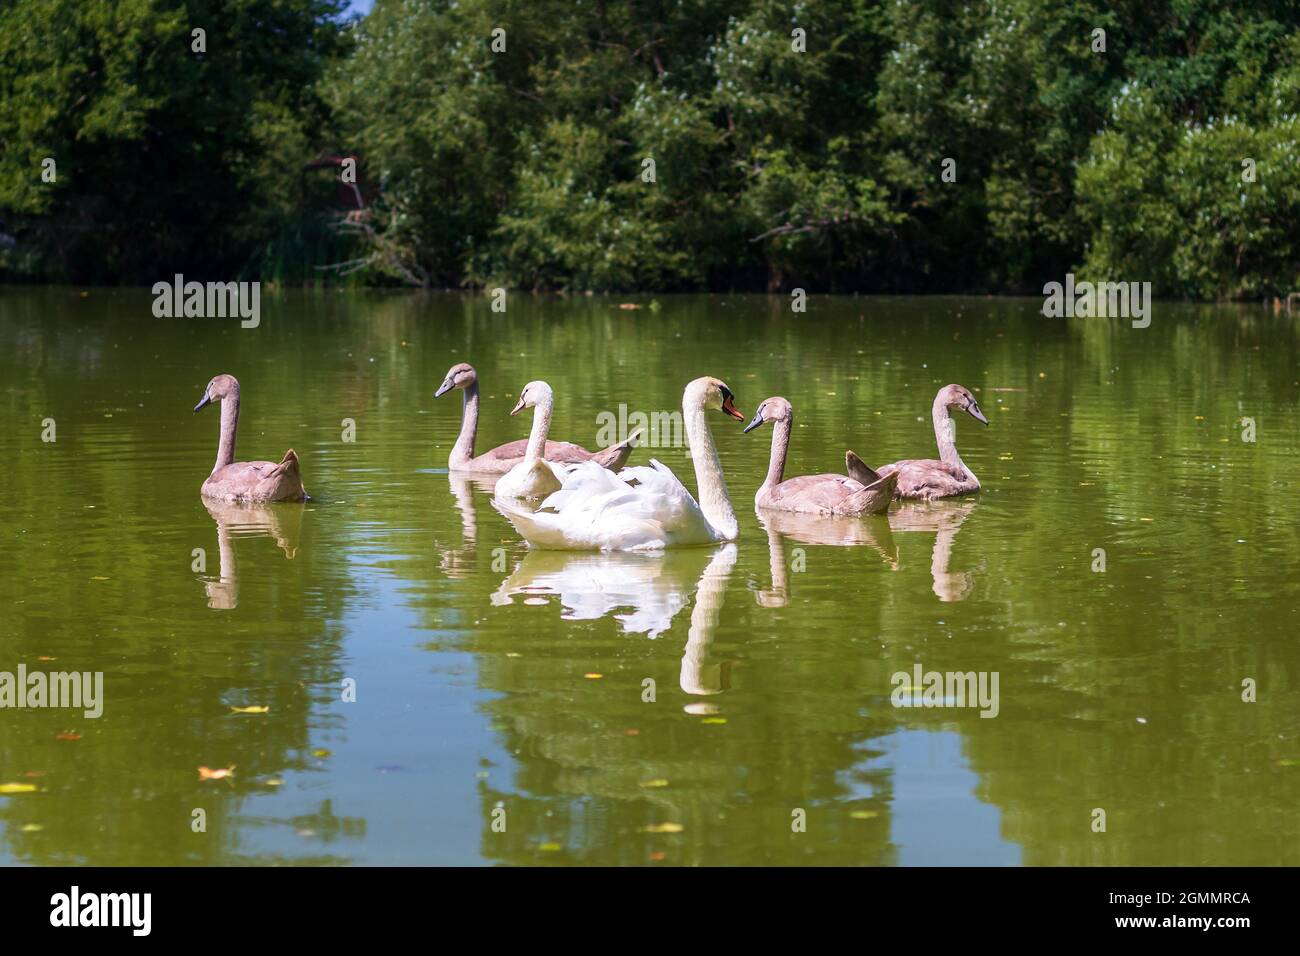 cygnes sur l'eau - famille de cygnes nageant dans l'étang Banque D'Images